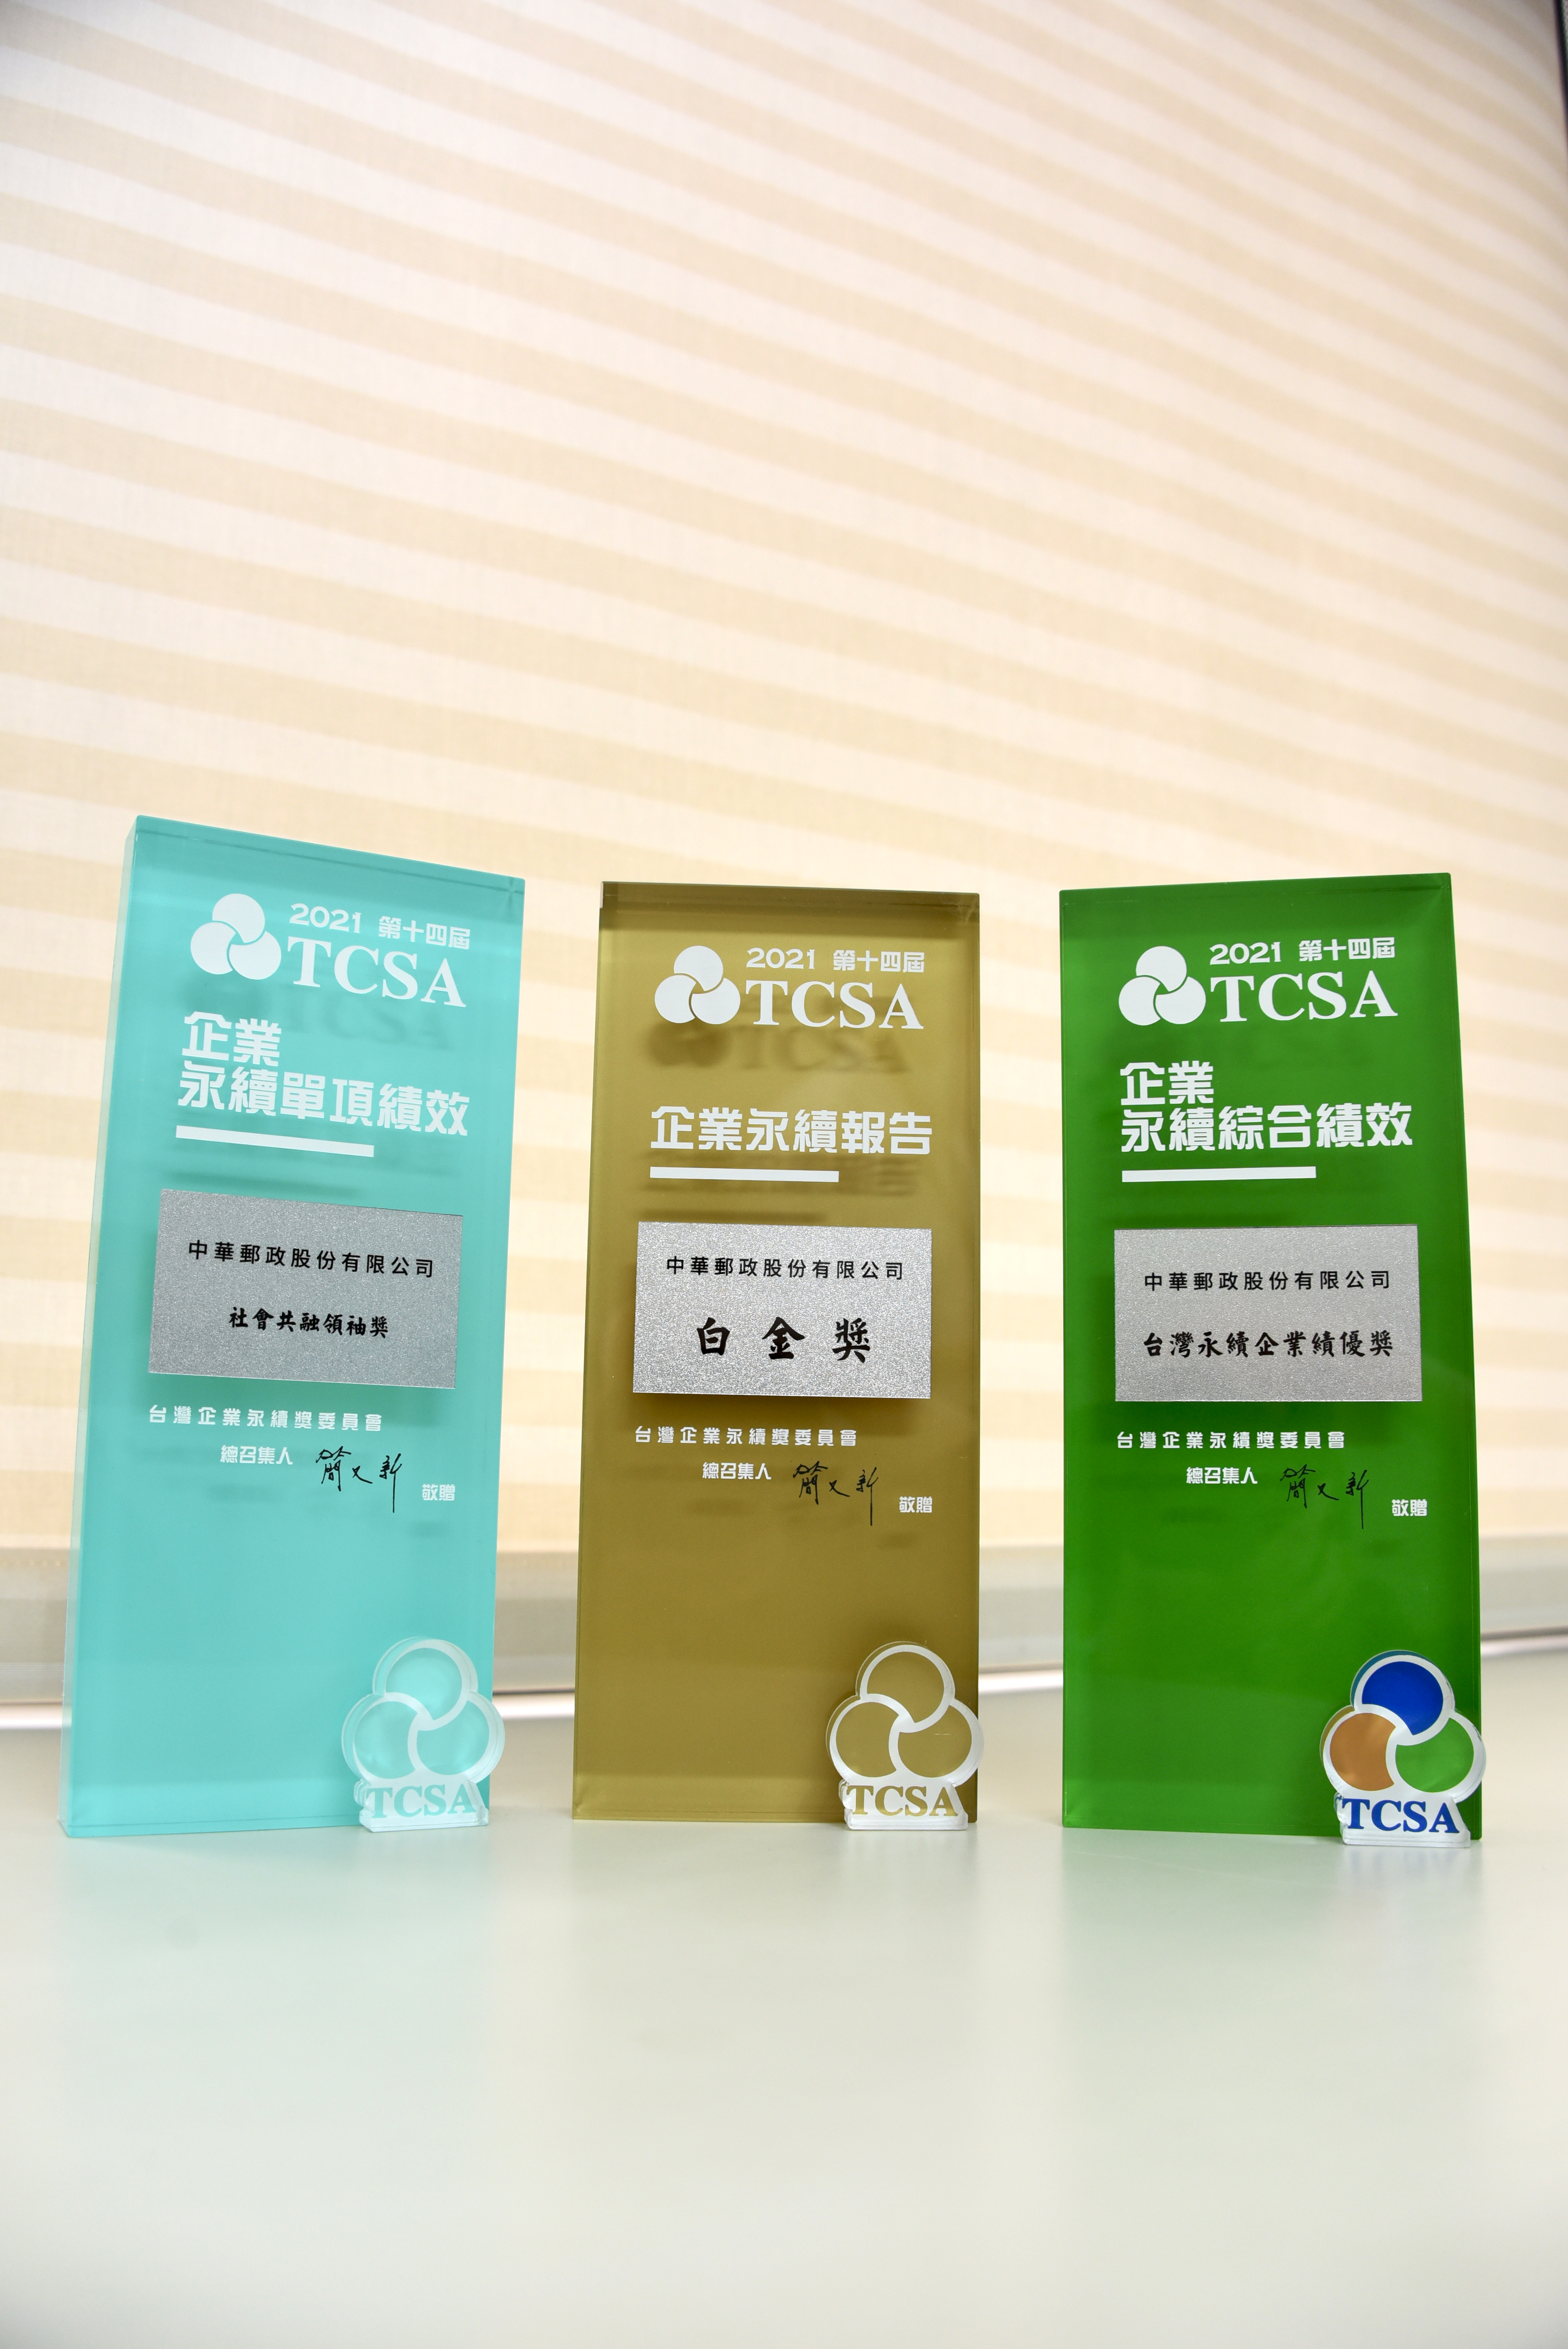 本公司參加「2021 TCSA 台灣企業永續獎」評選，榮獲金融及保險業「台灣永續企業–績優獎」、「永續報告–白金獎」及「永續單項績效–社會共融領袖獎」等3項殊榮